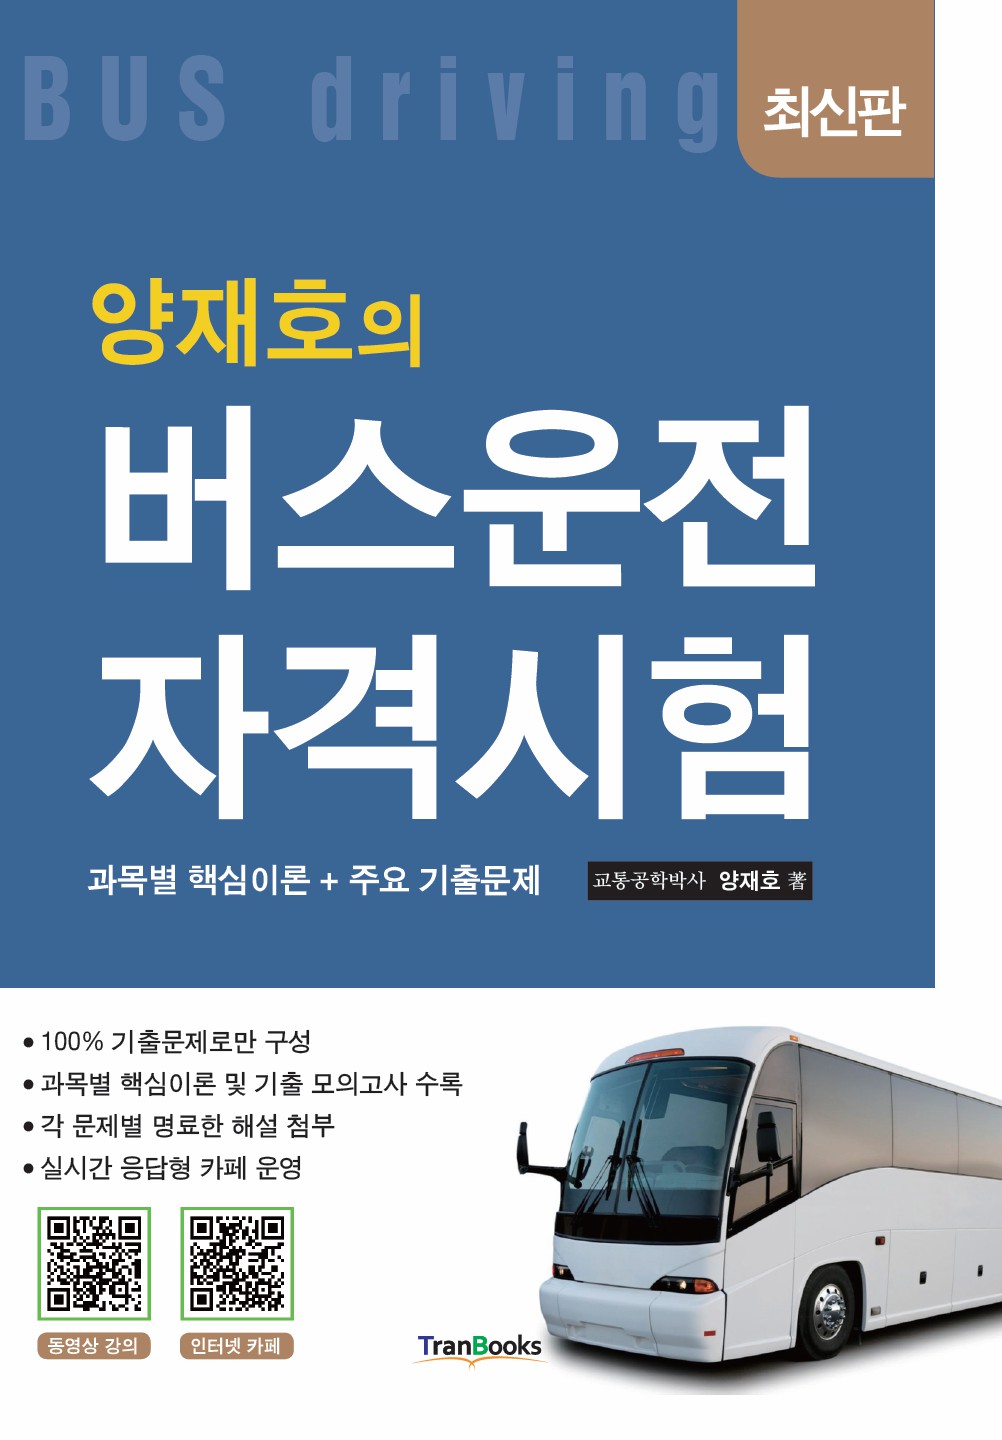 [패키지]버스운전자격시험(14일)